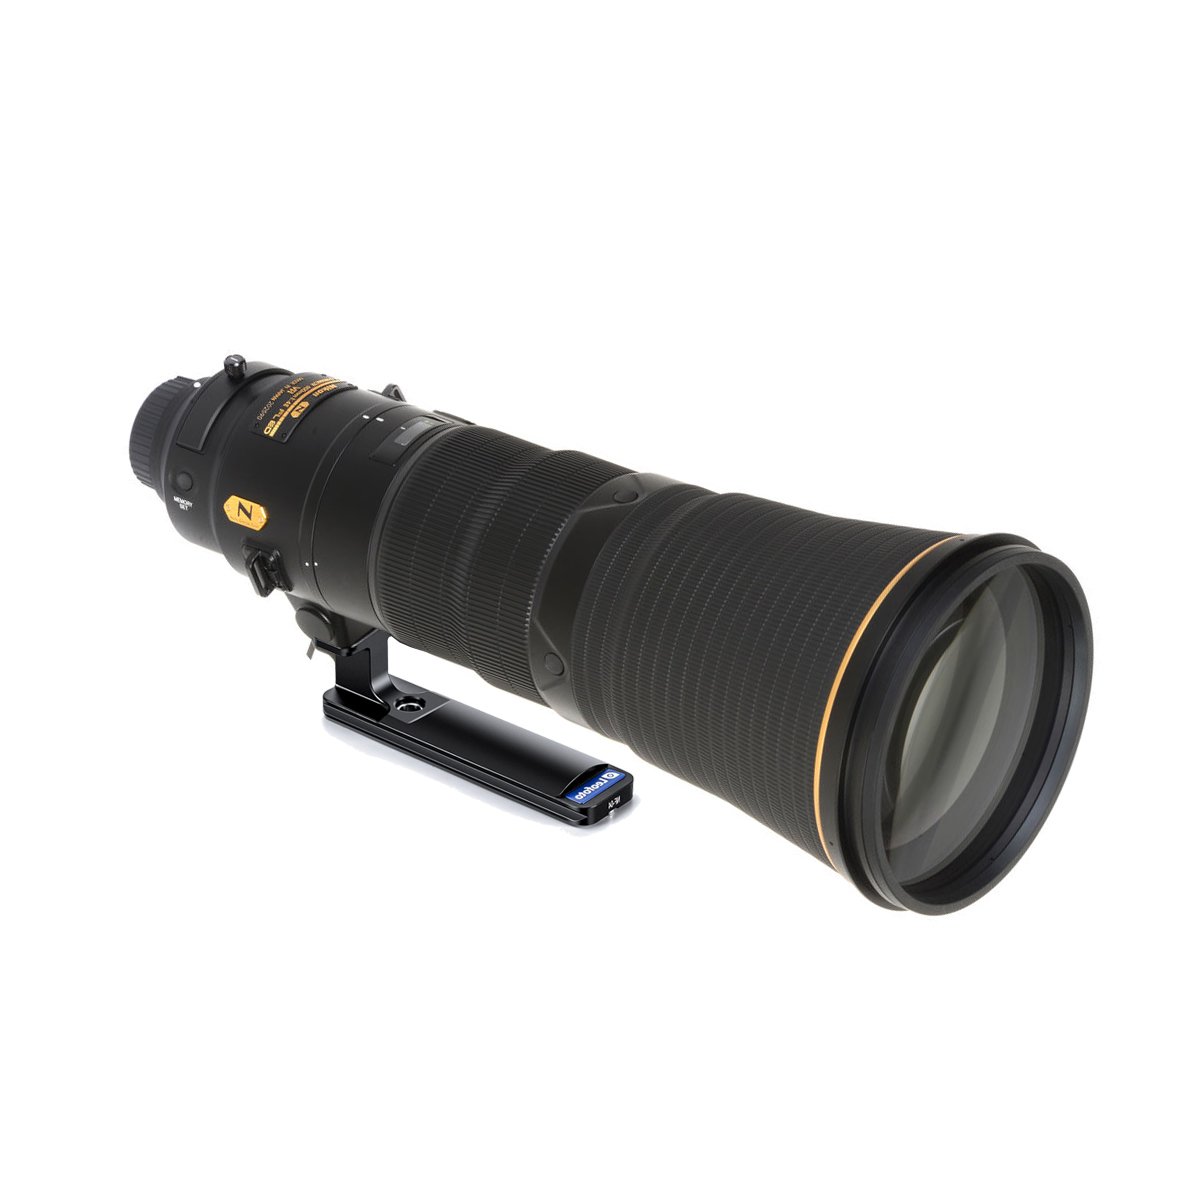 레오포토 NF-04 니콘 180-400mm / 400mm / 500mm / 600mm / 800mm 망원렌즈 플레이트